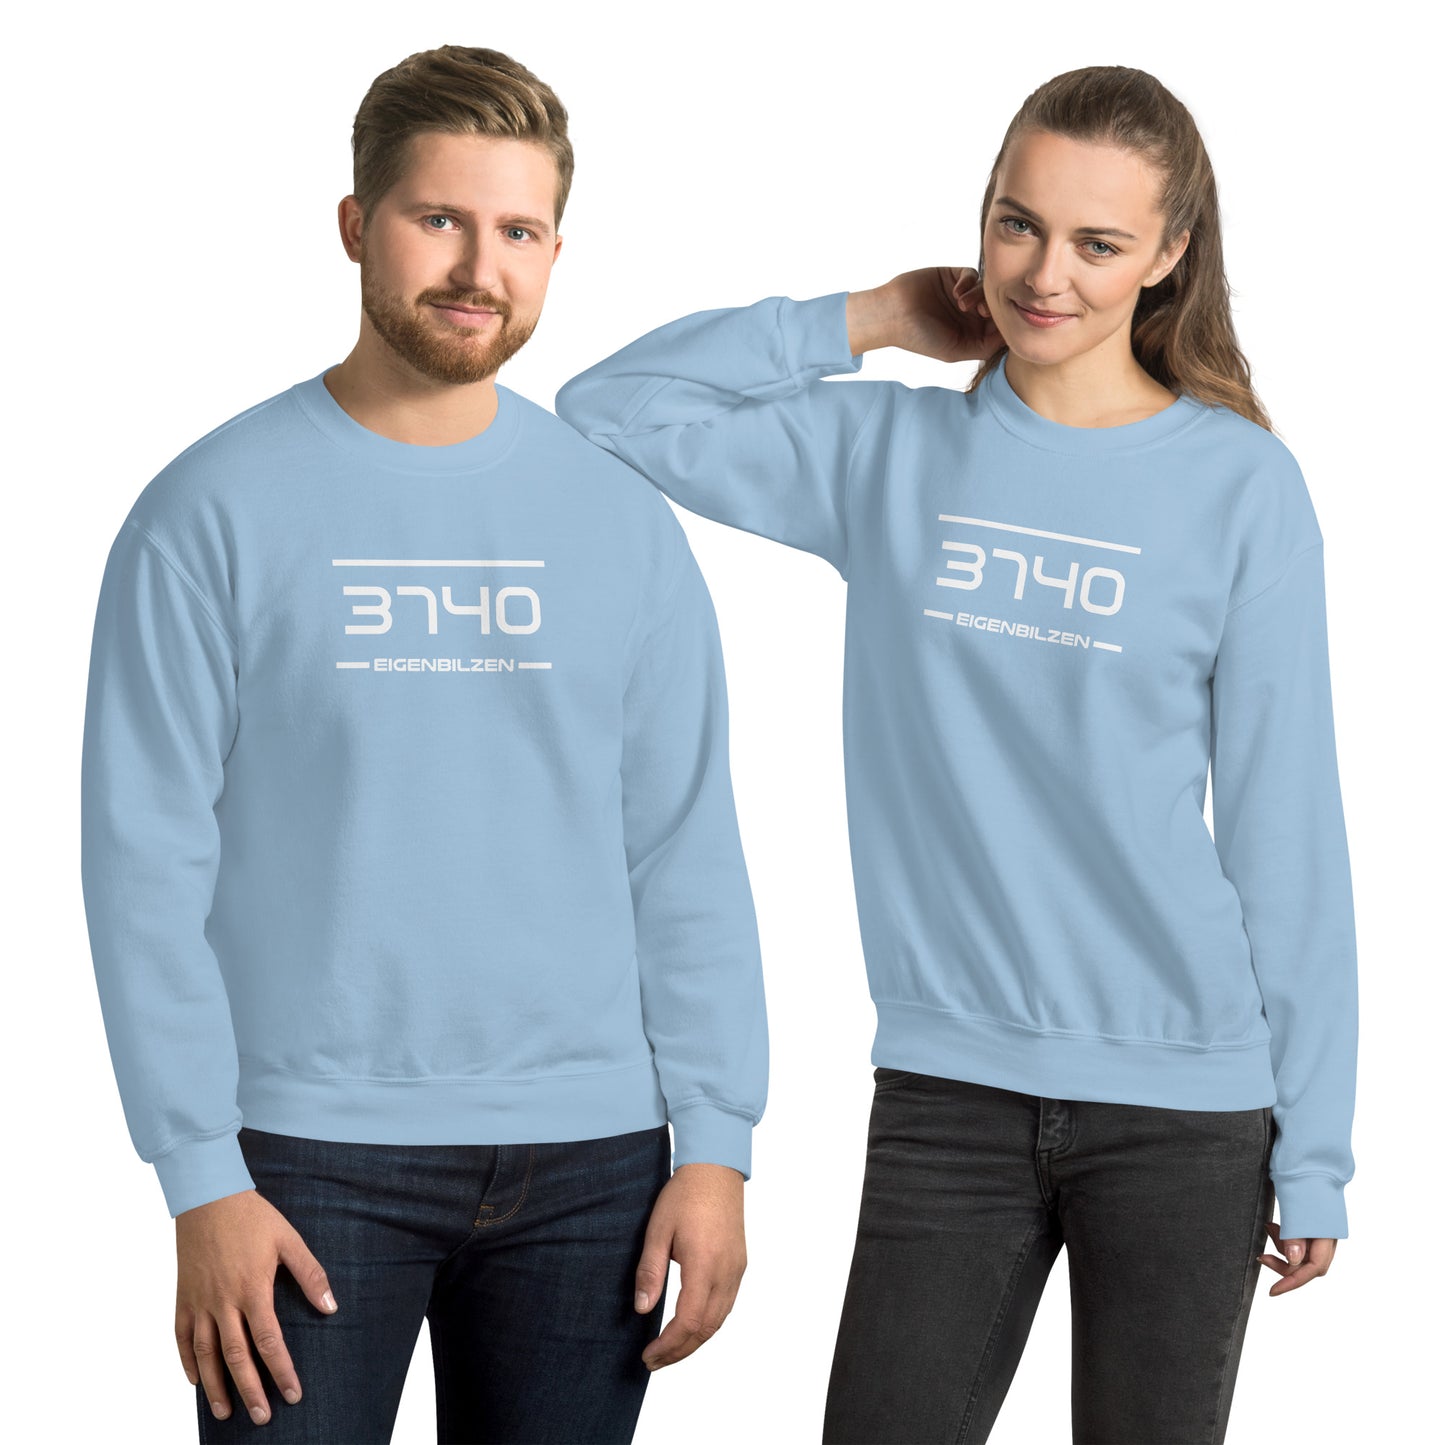 Sweater - 3740 - Eigenbilzen (M/V)